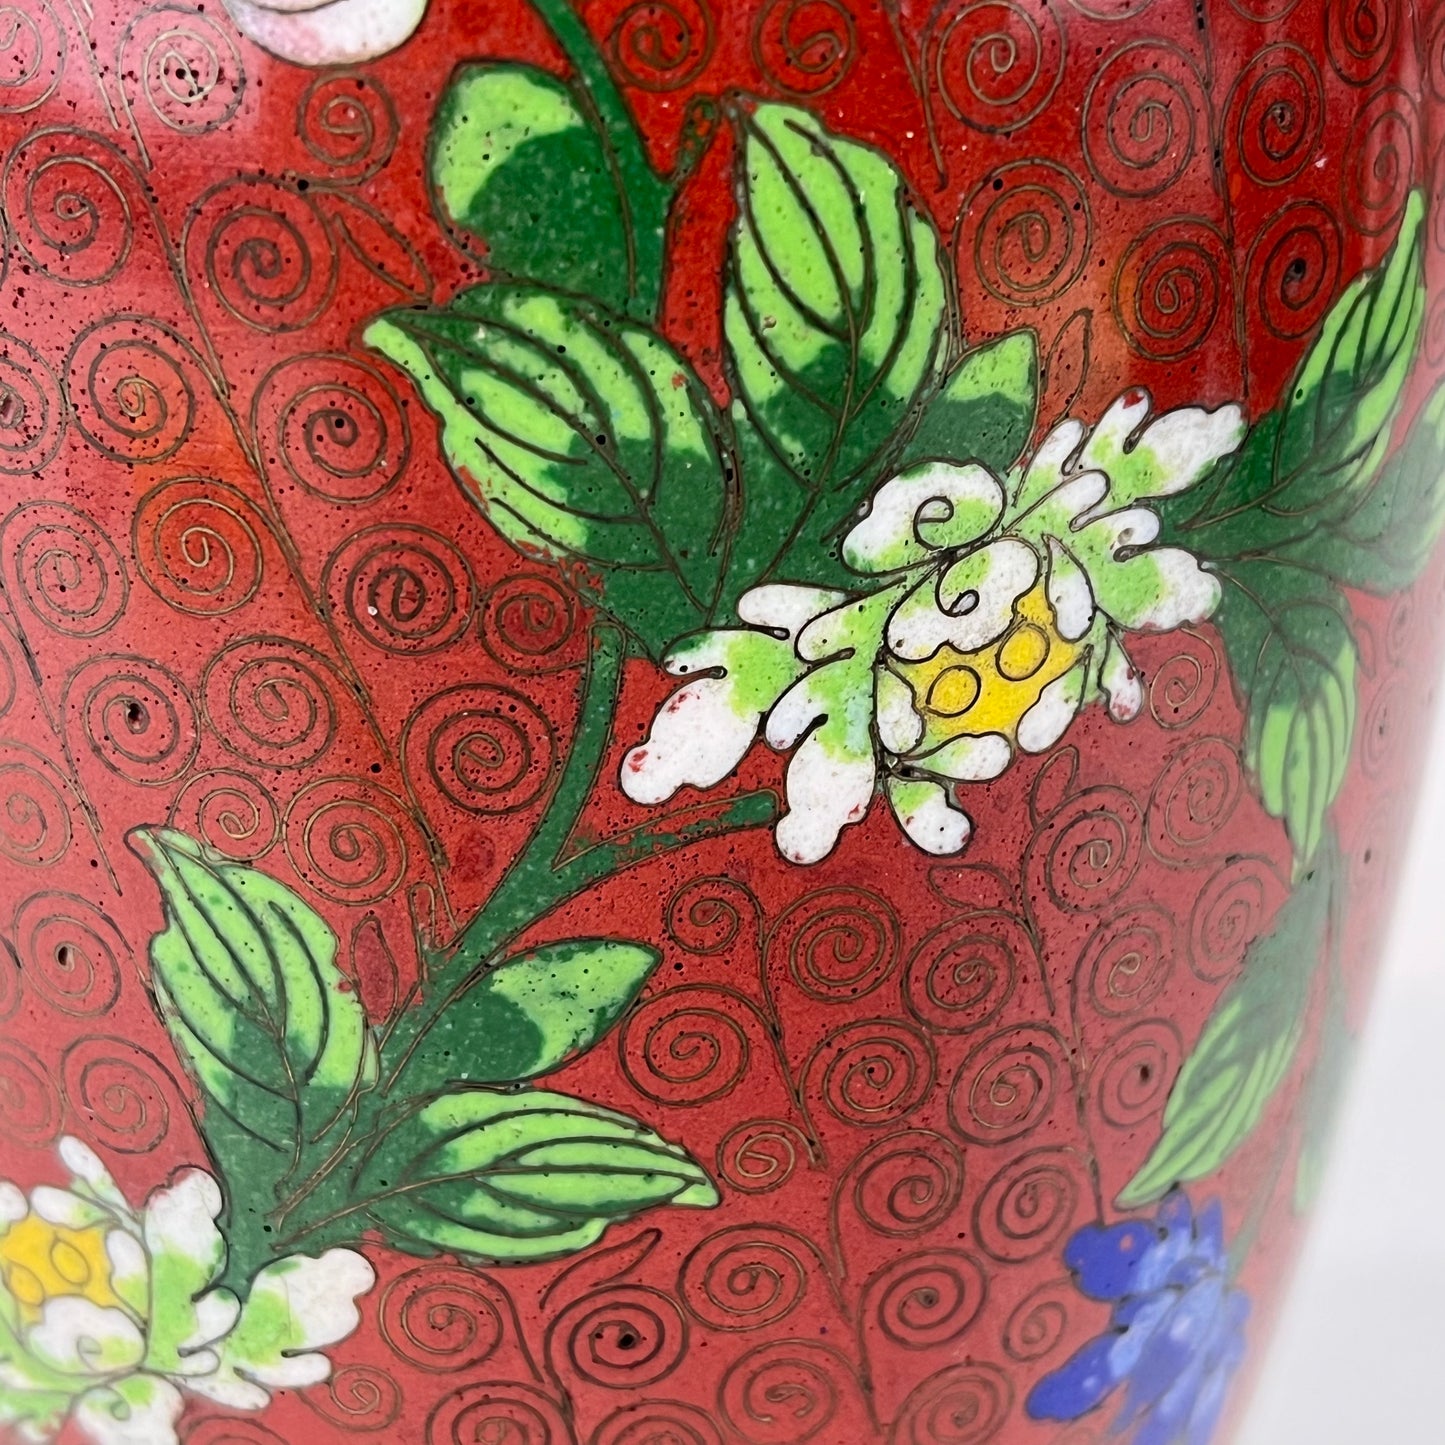 Vintage Chinese 70 Year Old Red Cloisonne Vase Floral Design 9"